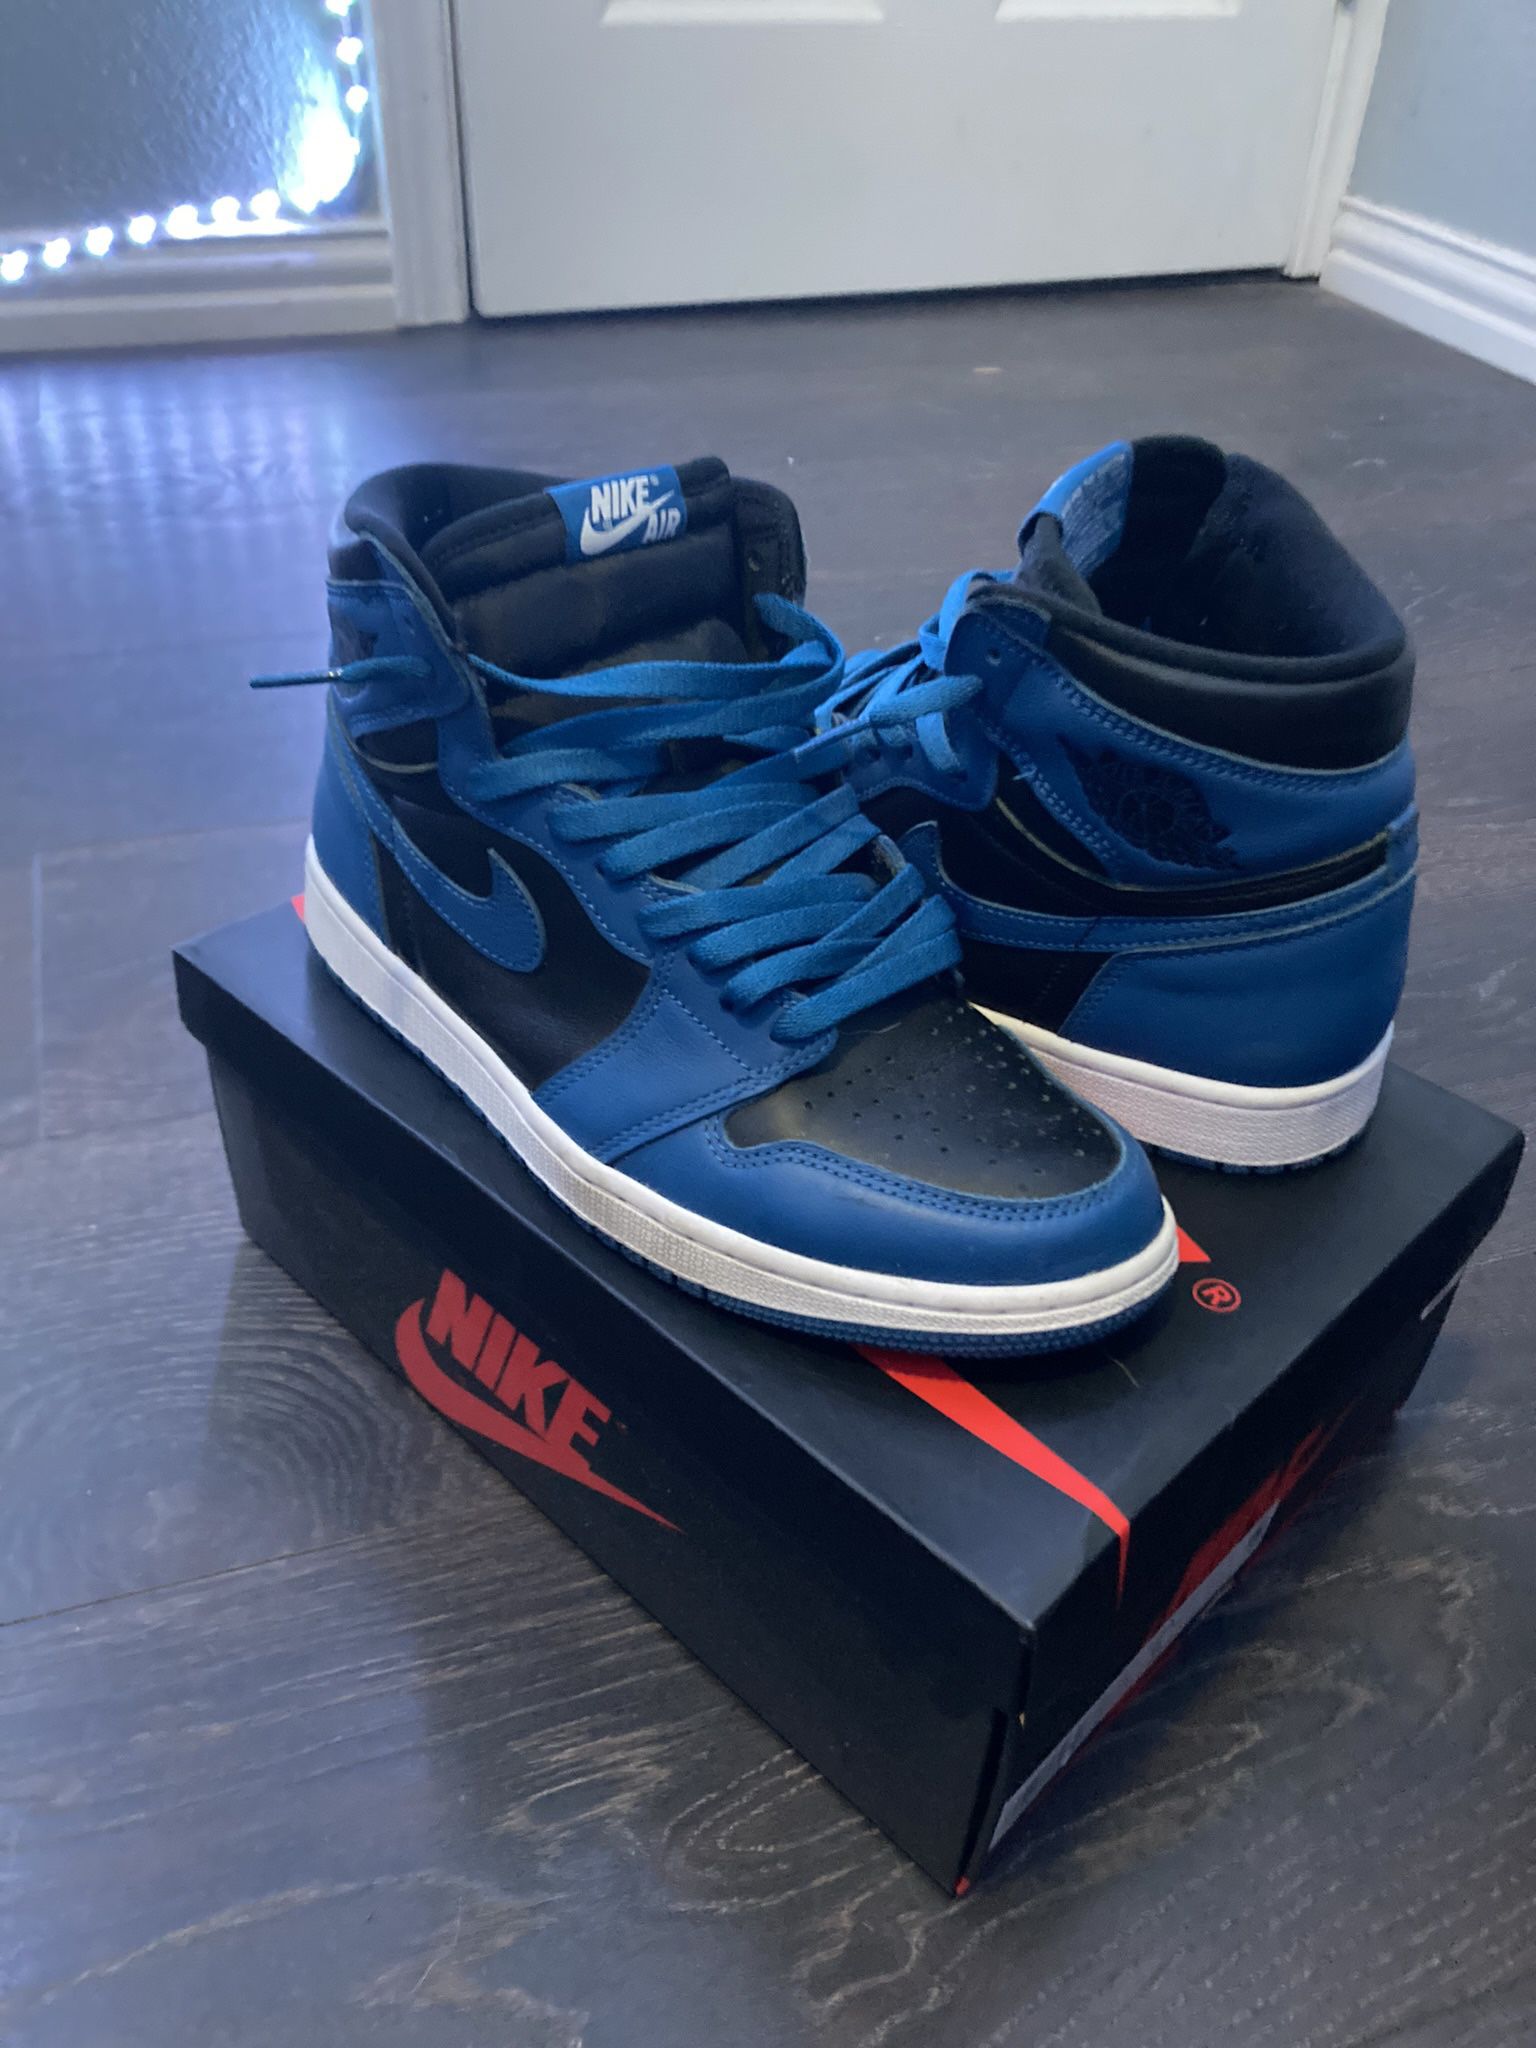 Nike Jordan 1’s Retro Blue